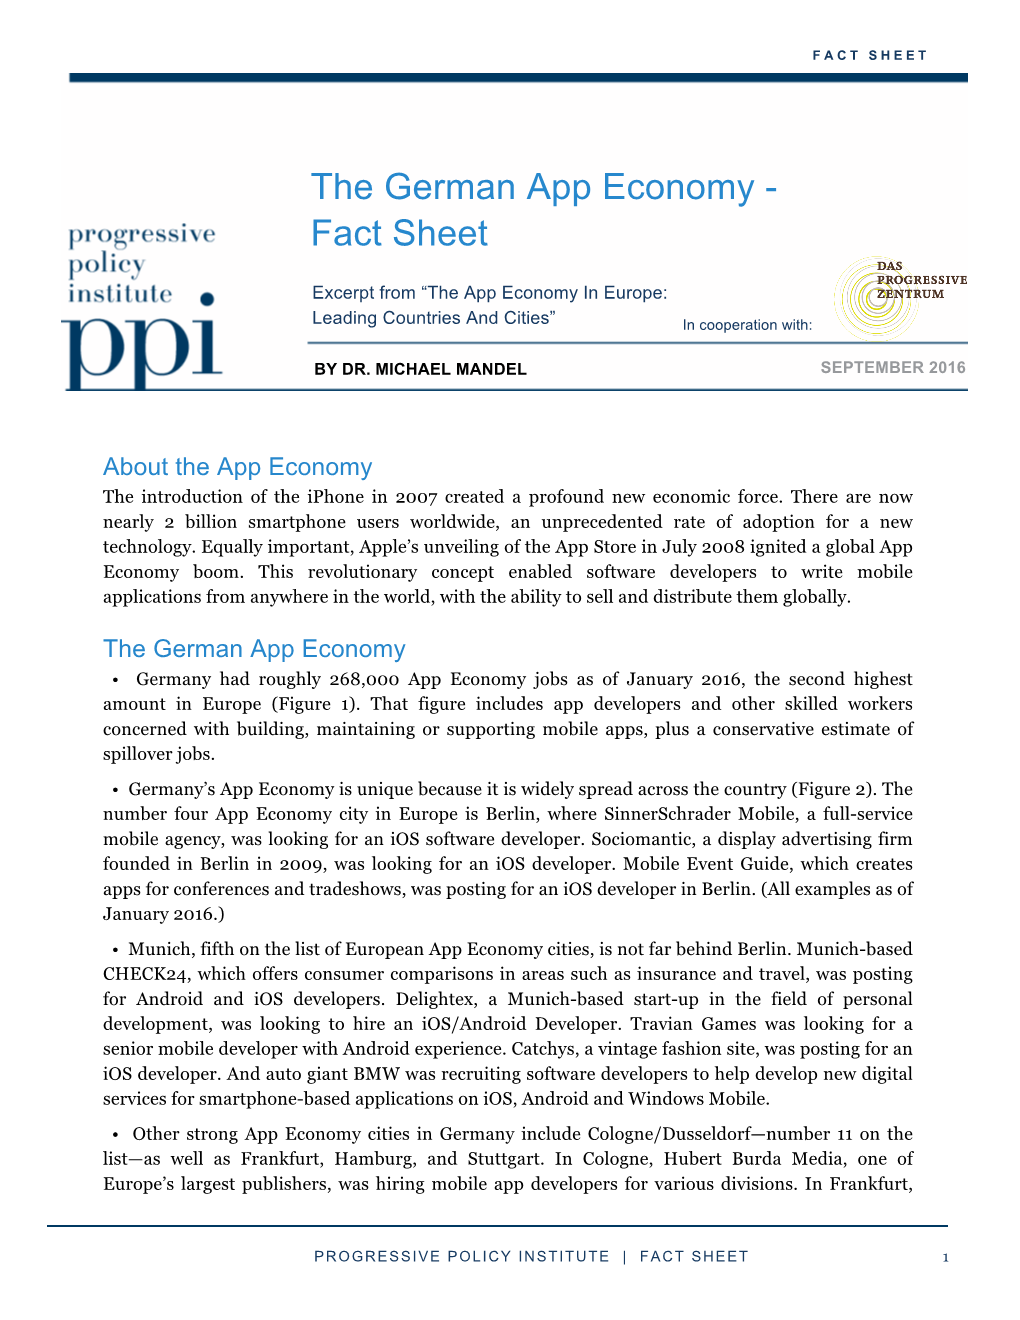 German App Economy